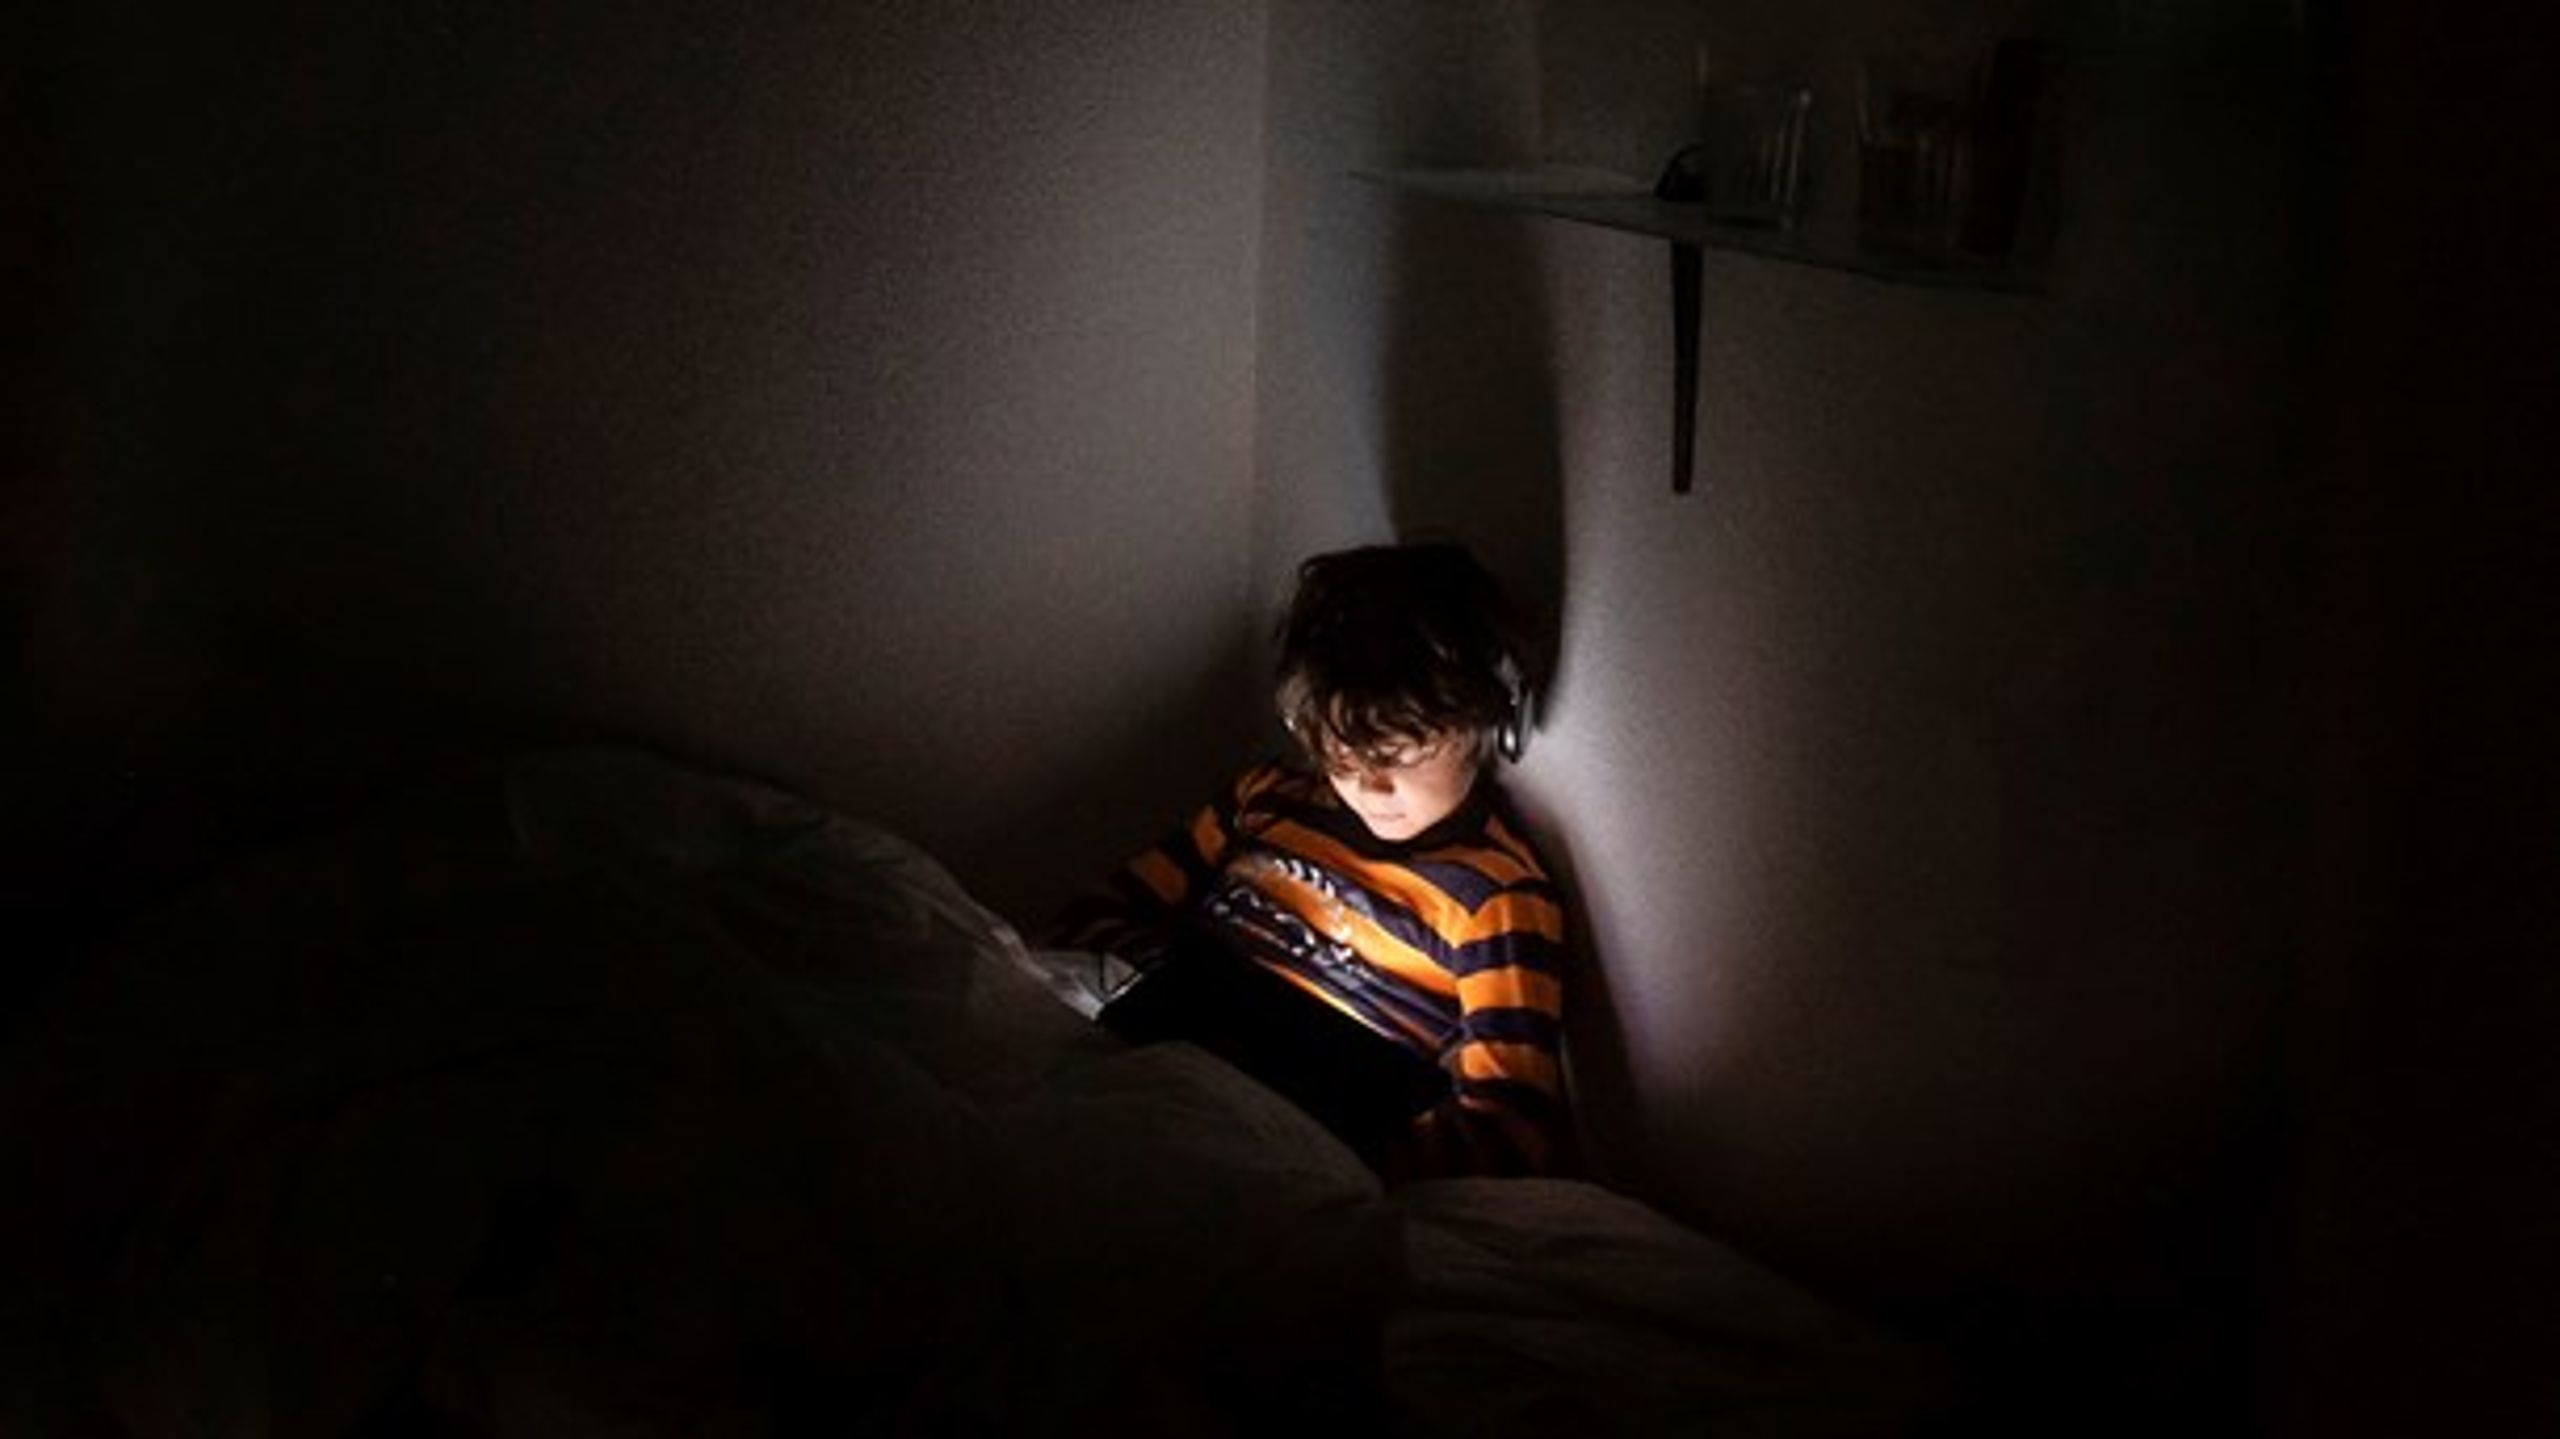 Vi ser nu en modbølge i forhold til skærmforbruget mange timer hver dag og den afhængighed, som stresser både børn, unge og voksne, skriver Lisbeth Knudsen.